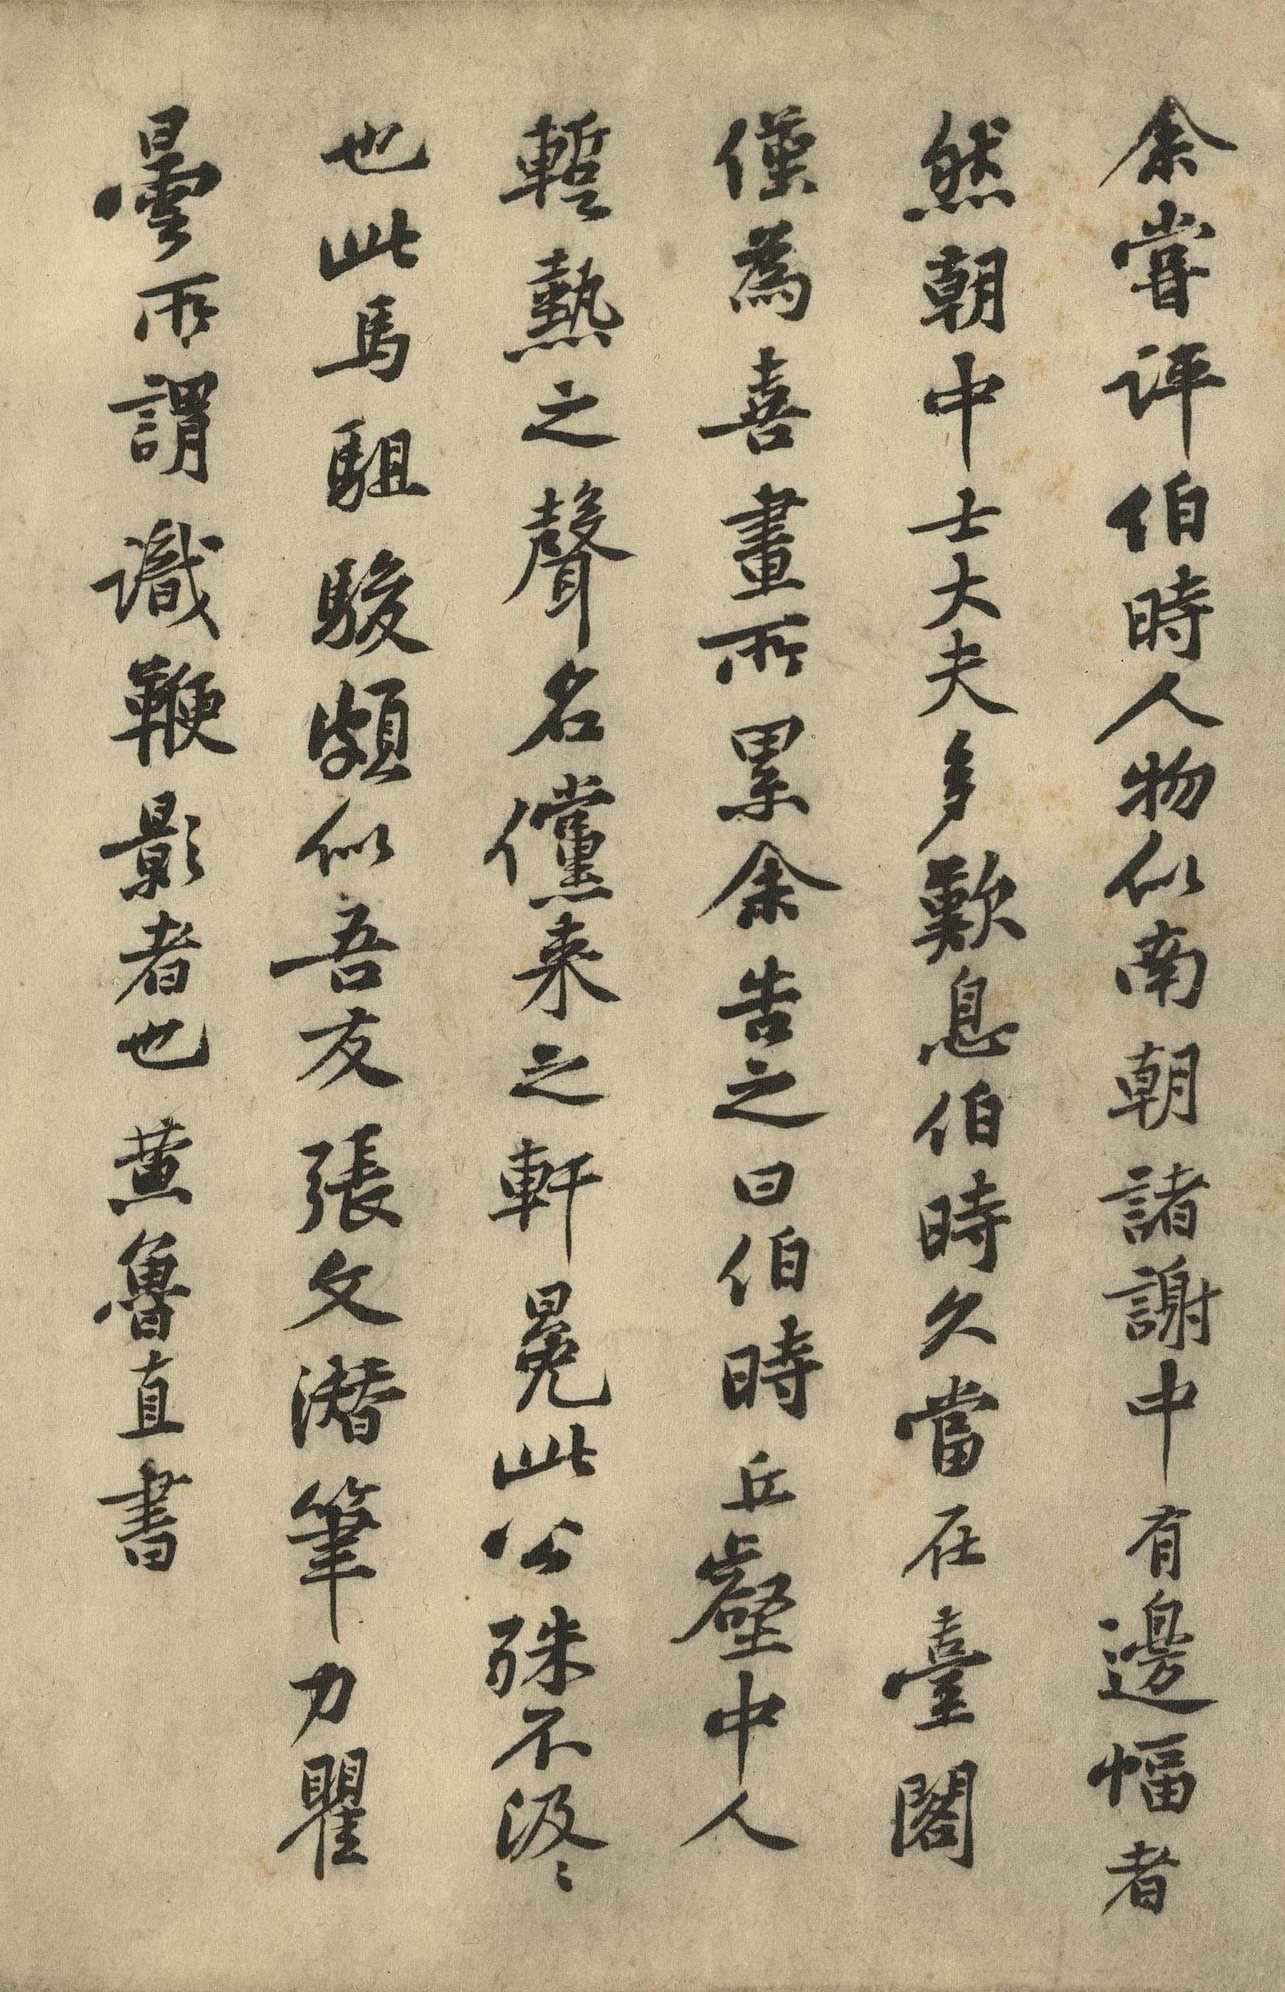 黄庭坚《李公麟"五马图"跋语》-北京故宫博物院藏(图1)